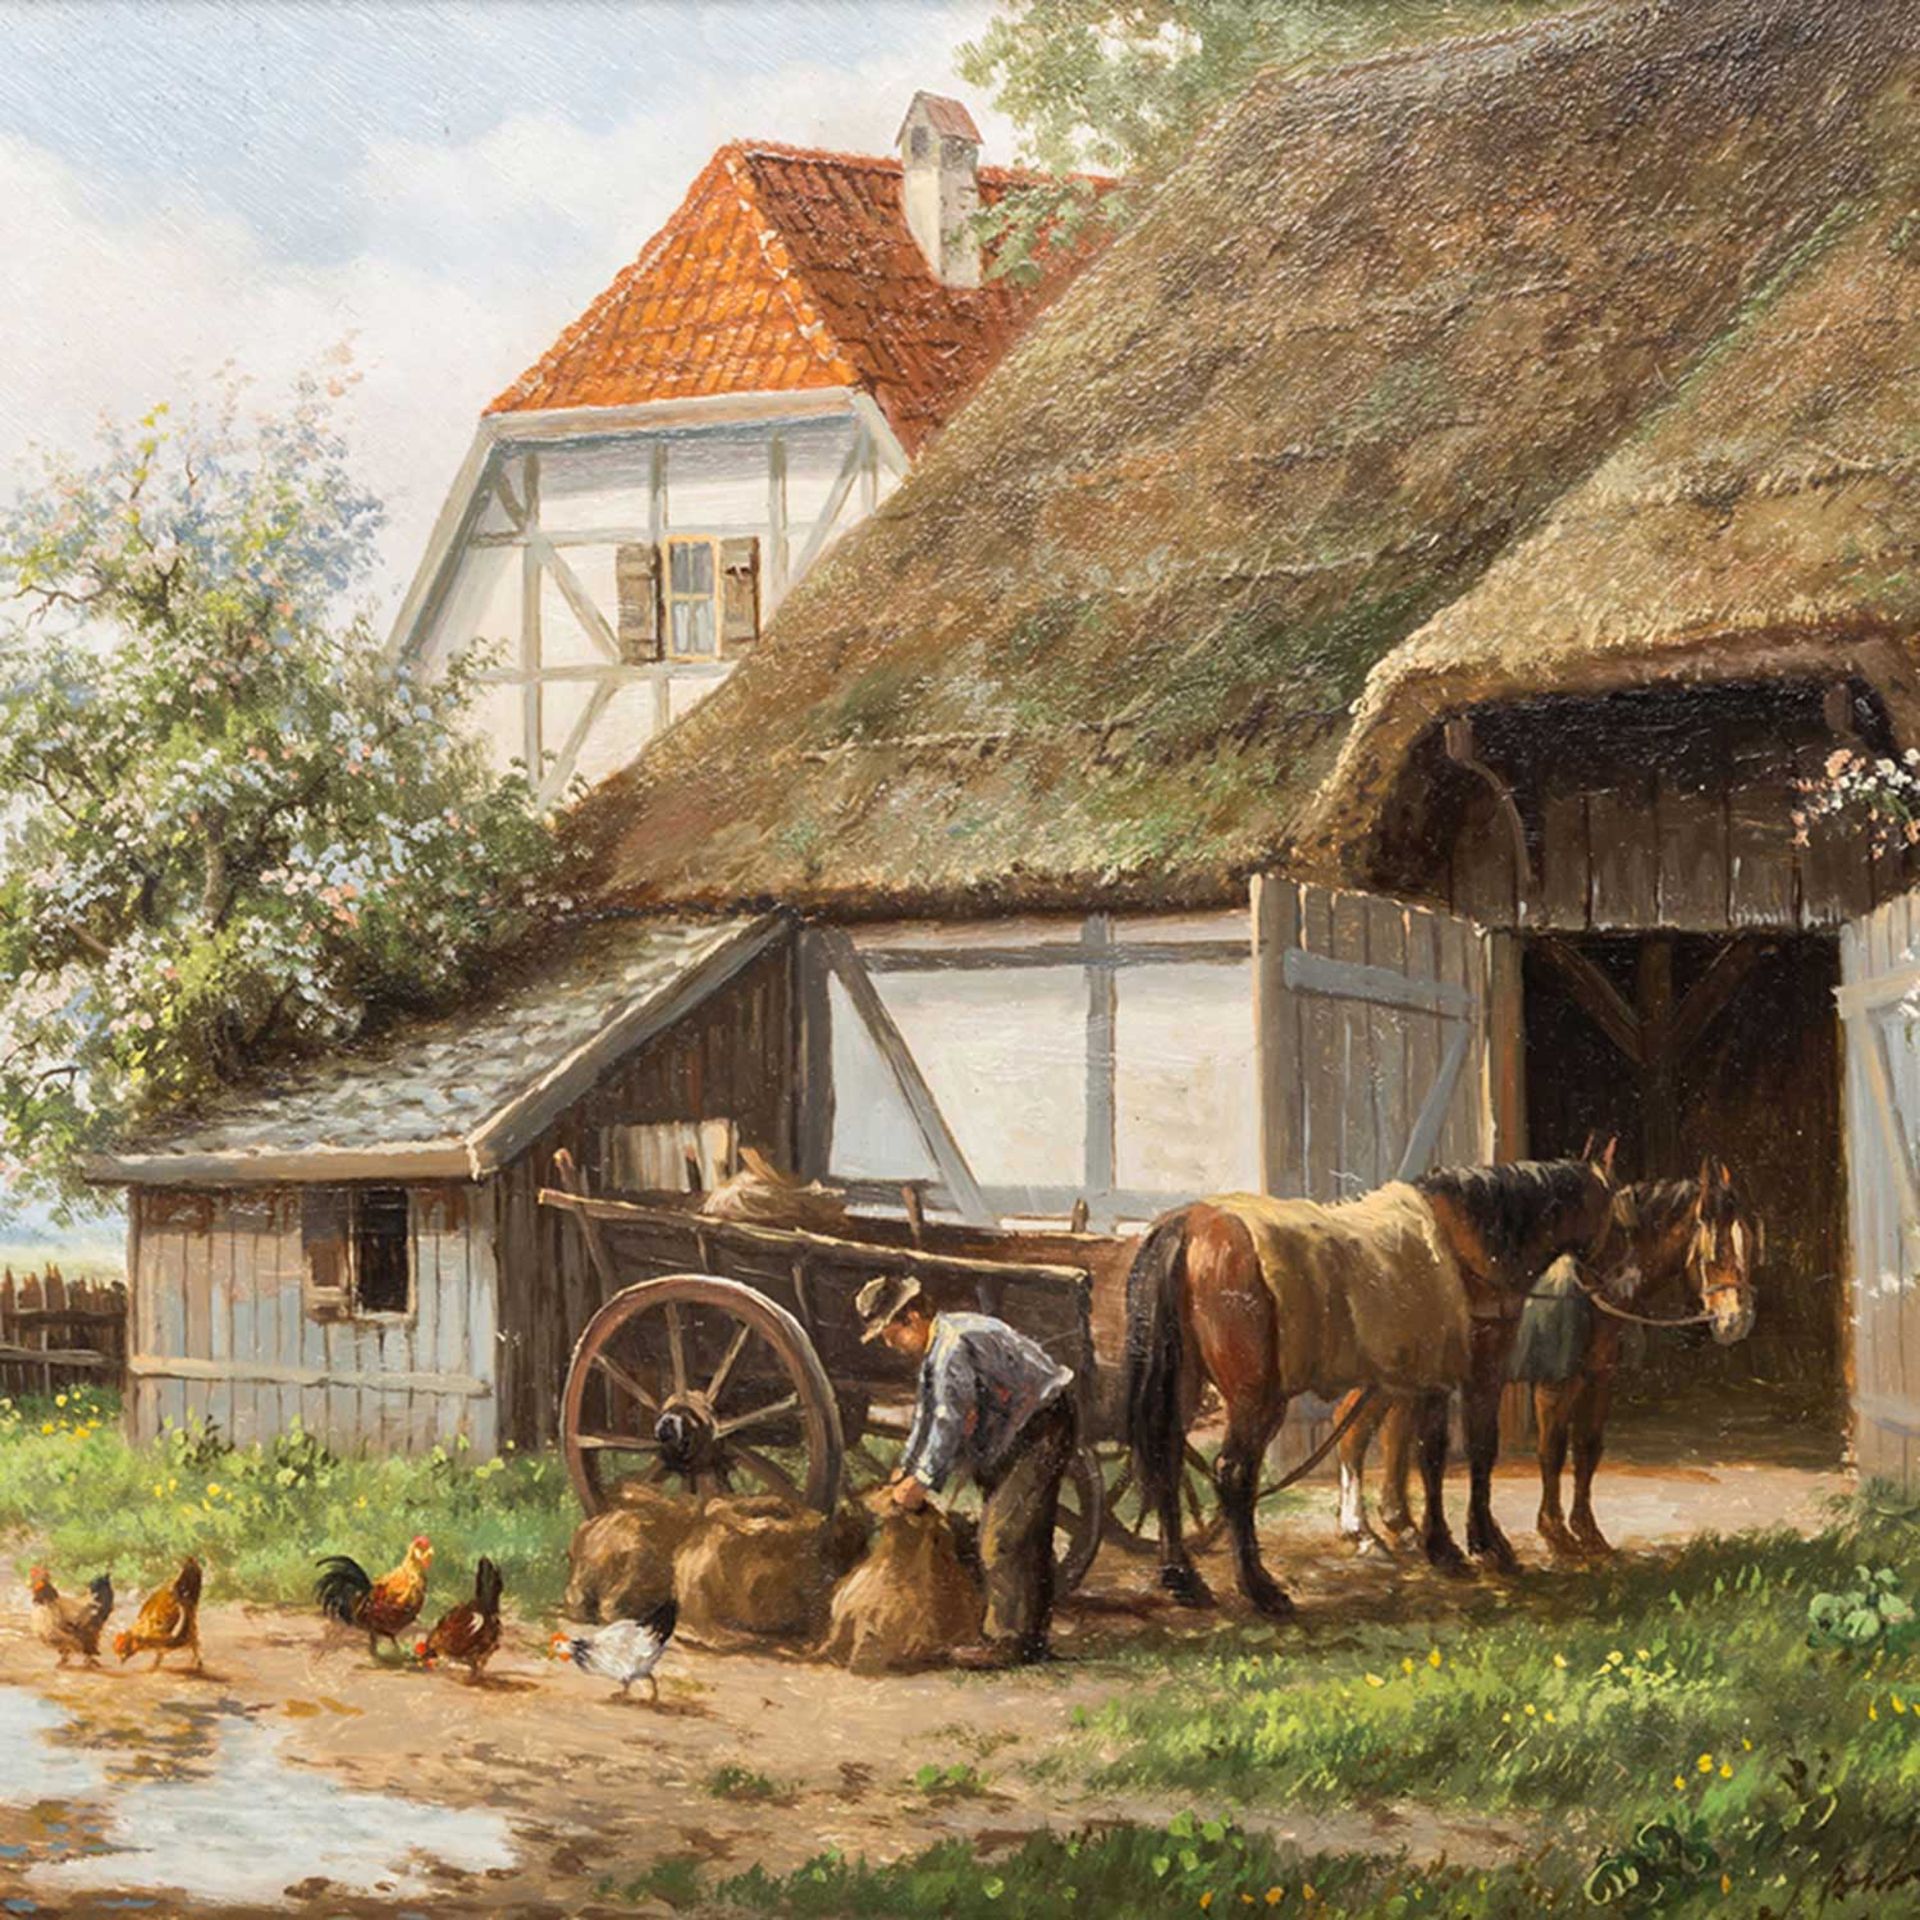 MEILOF, RON (Maler 20. Jh.), "Bauer mit Pferden und Hühnern vor dem Gehöft", u.re. sign., Öl auf